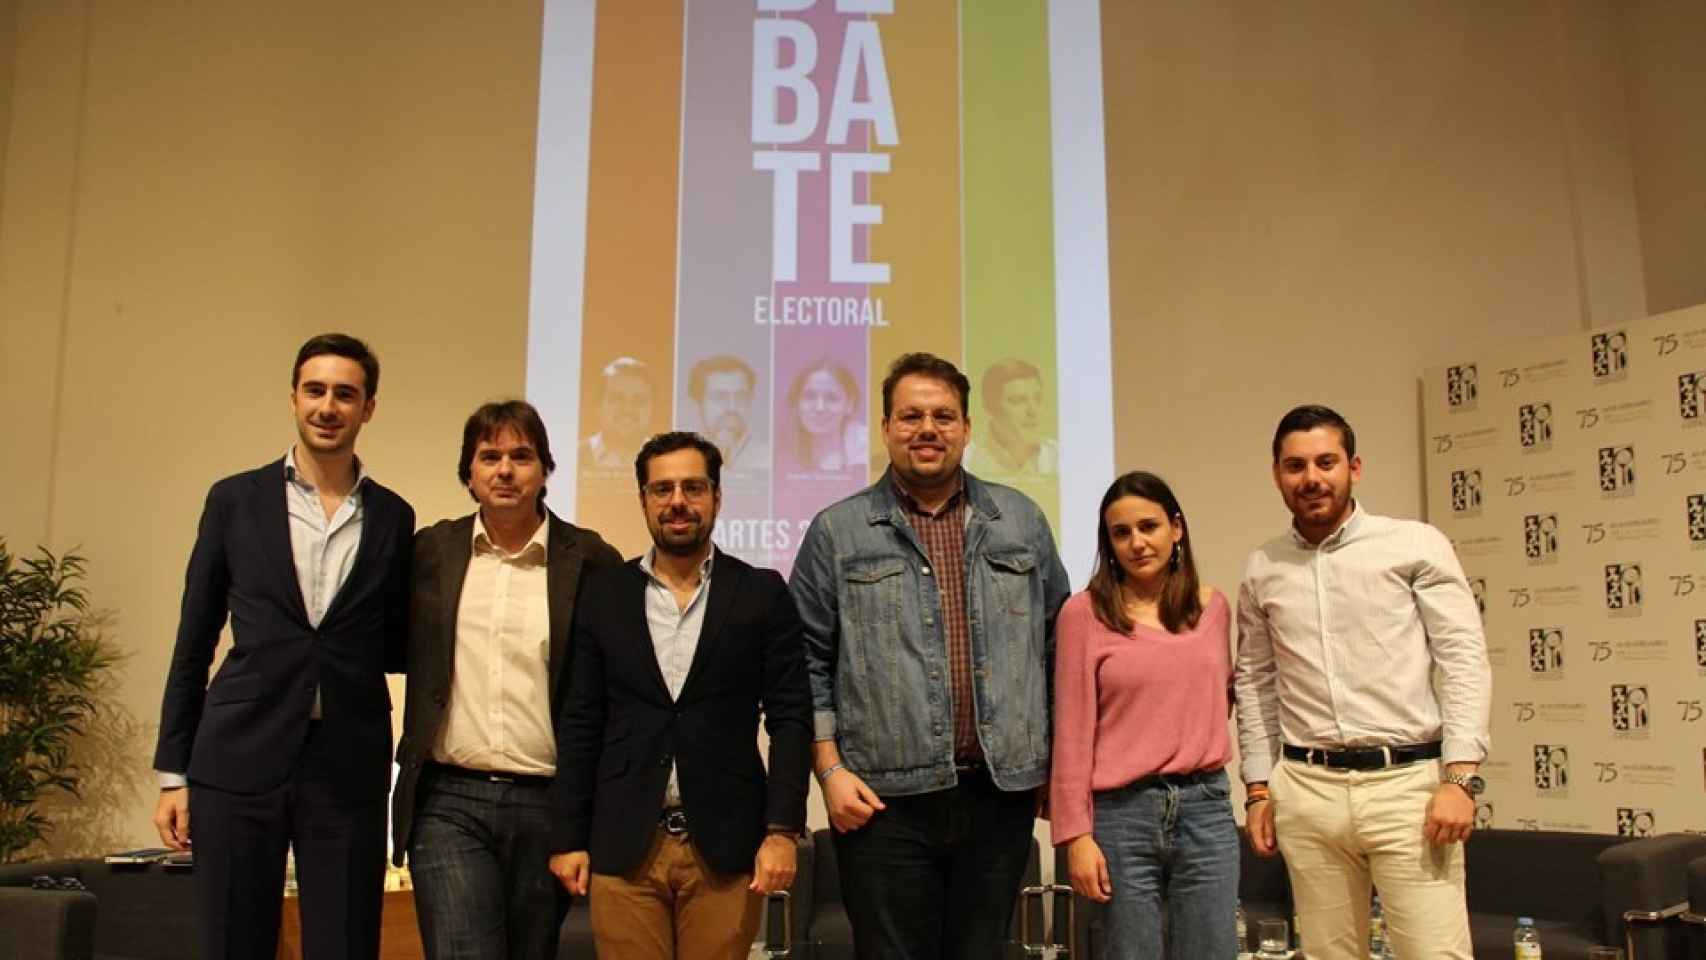 Sabela Rodríguez (Podemos), segunda por la derecha, junto al resto de dirigentes juveniles de los partidos y el moderador (segundo izqda.)